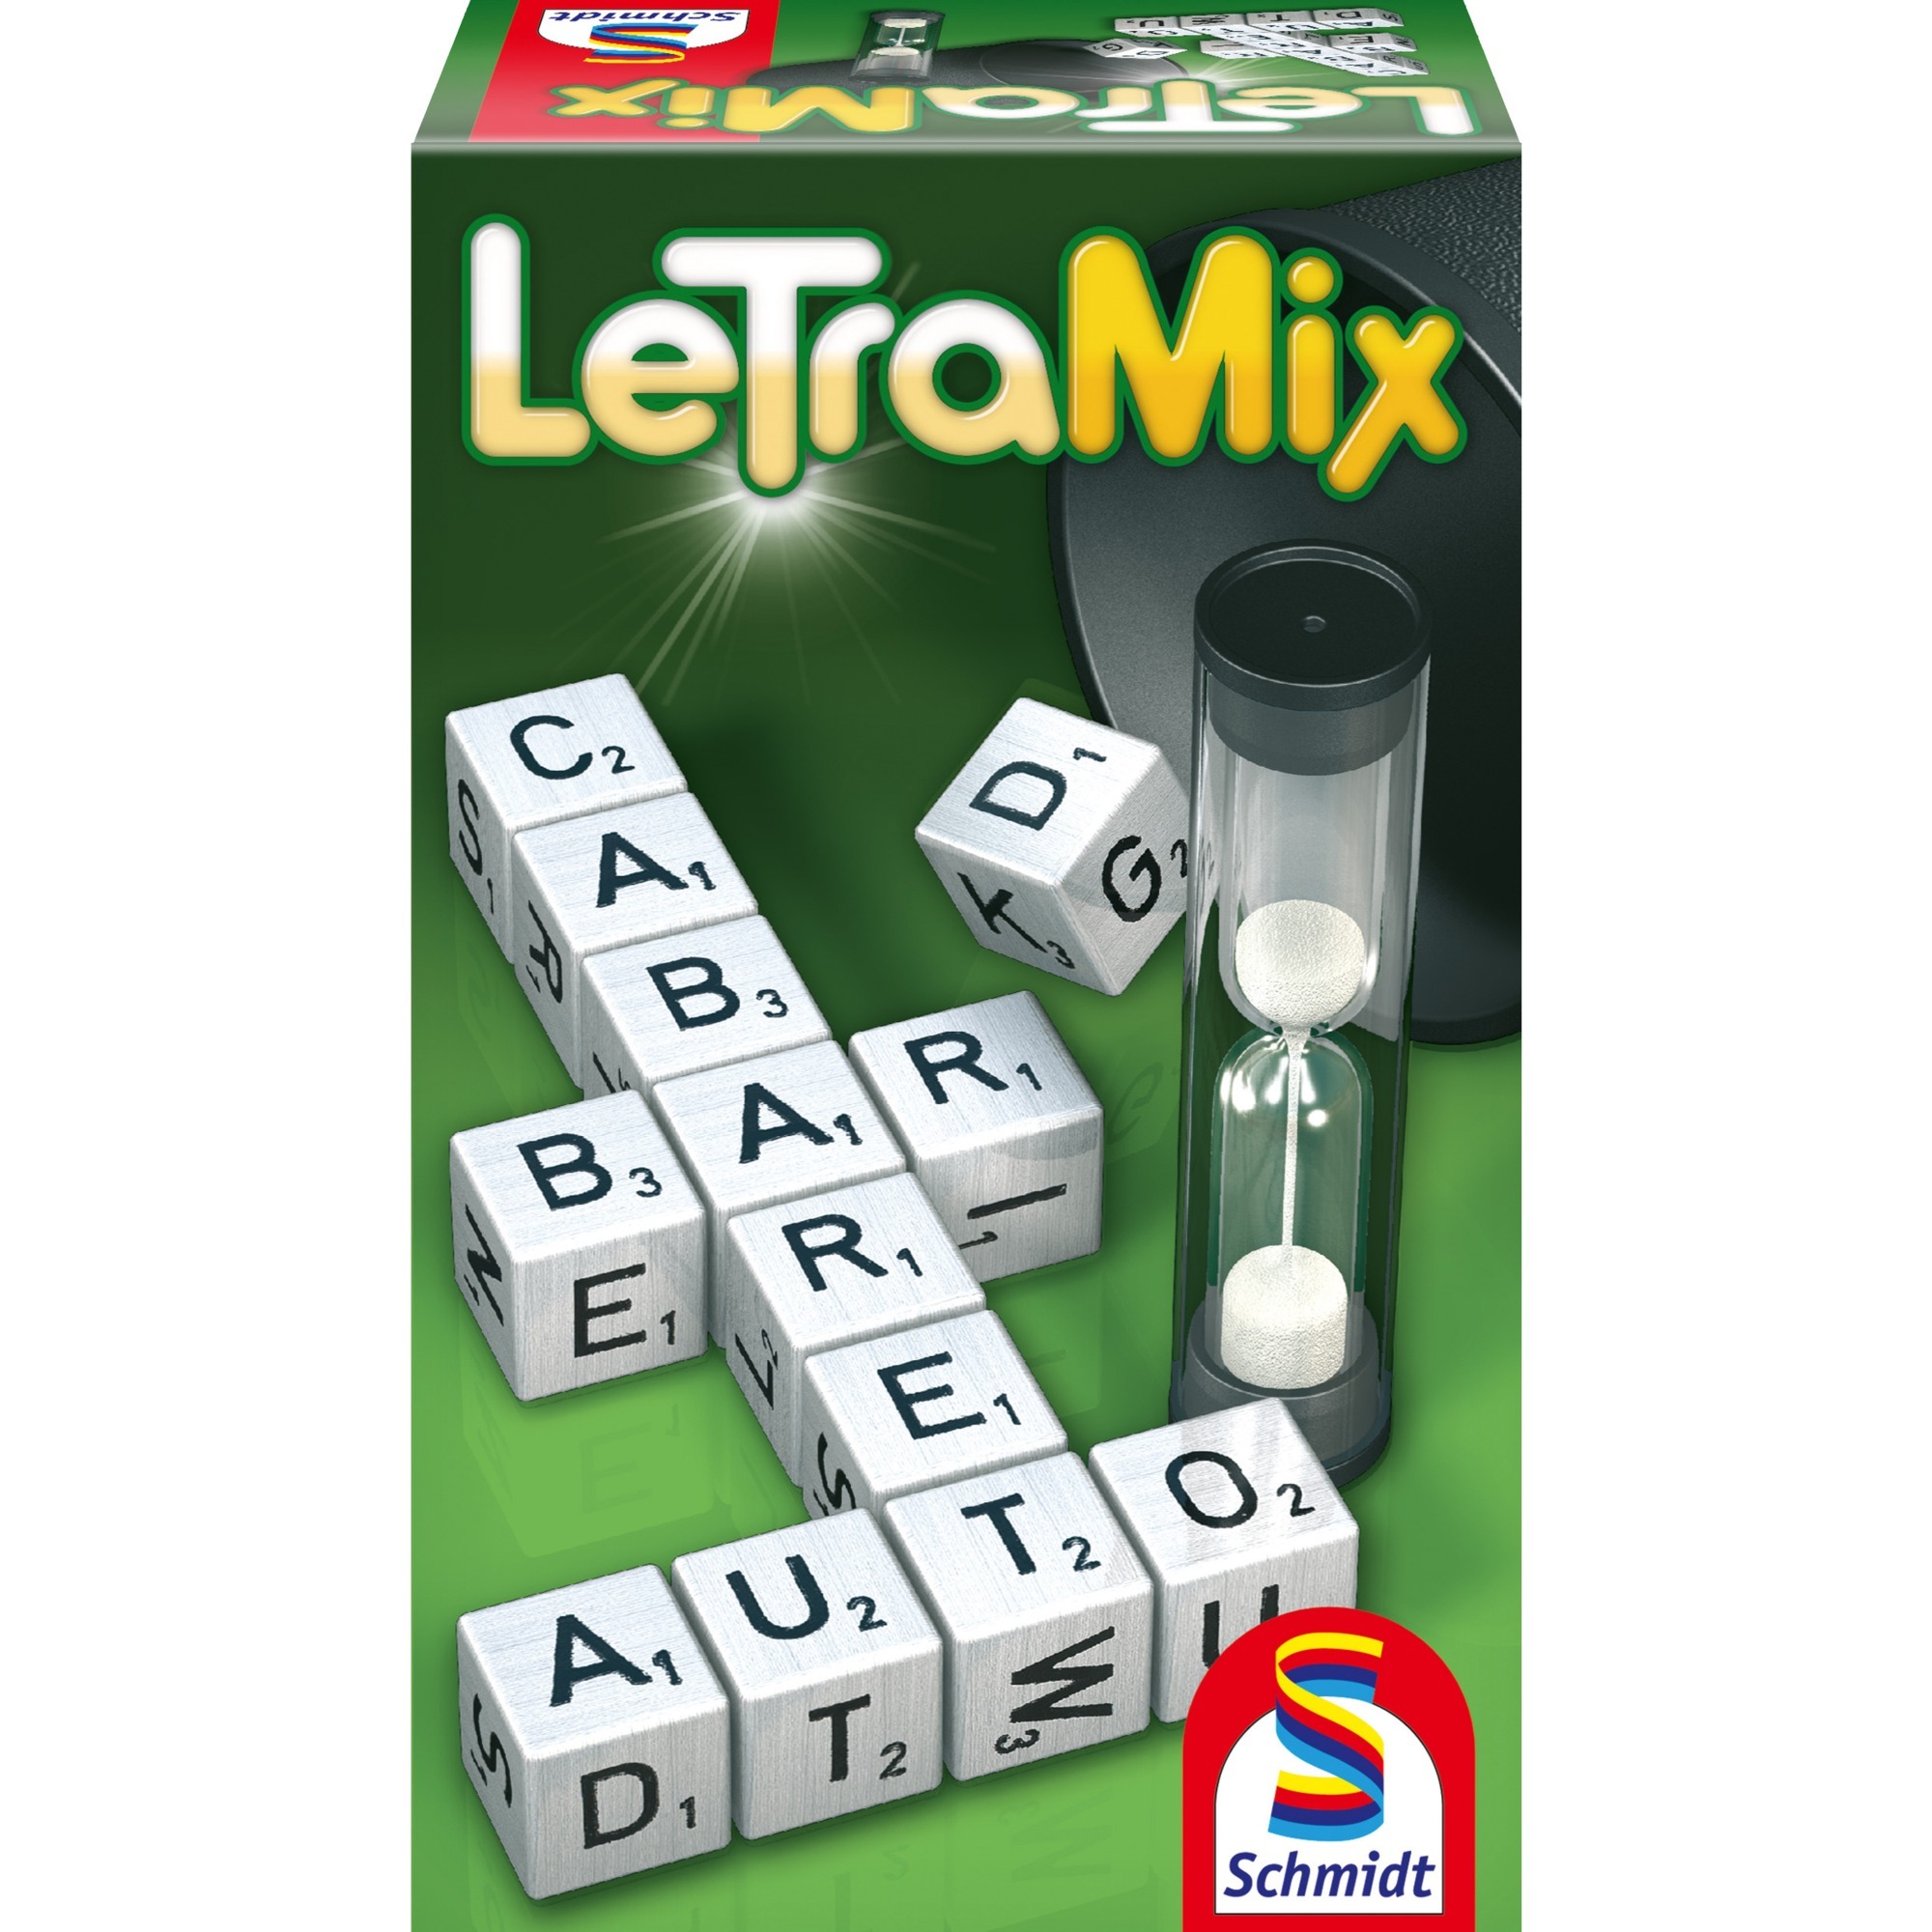 Image of Alternate - Letra-Mix, Würfelspiel online einkaufen bei Alternate